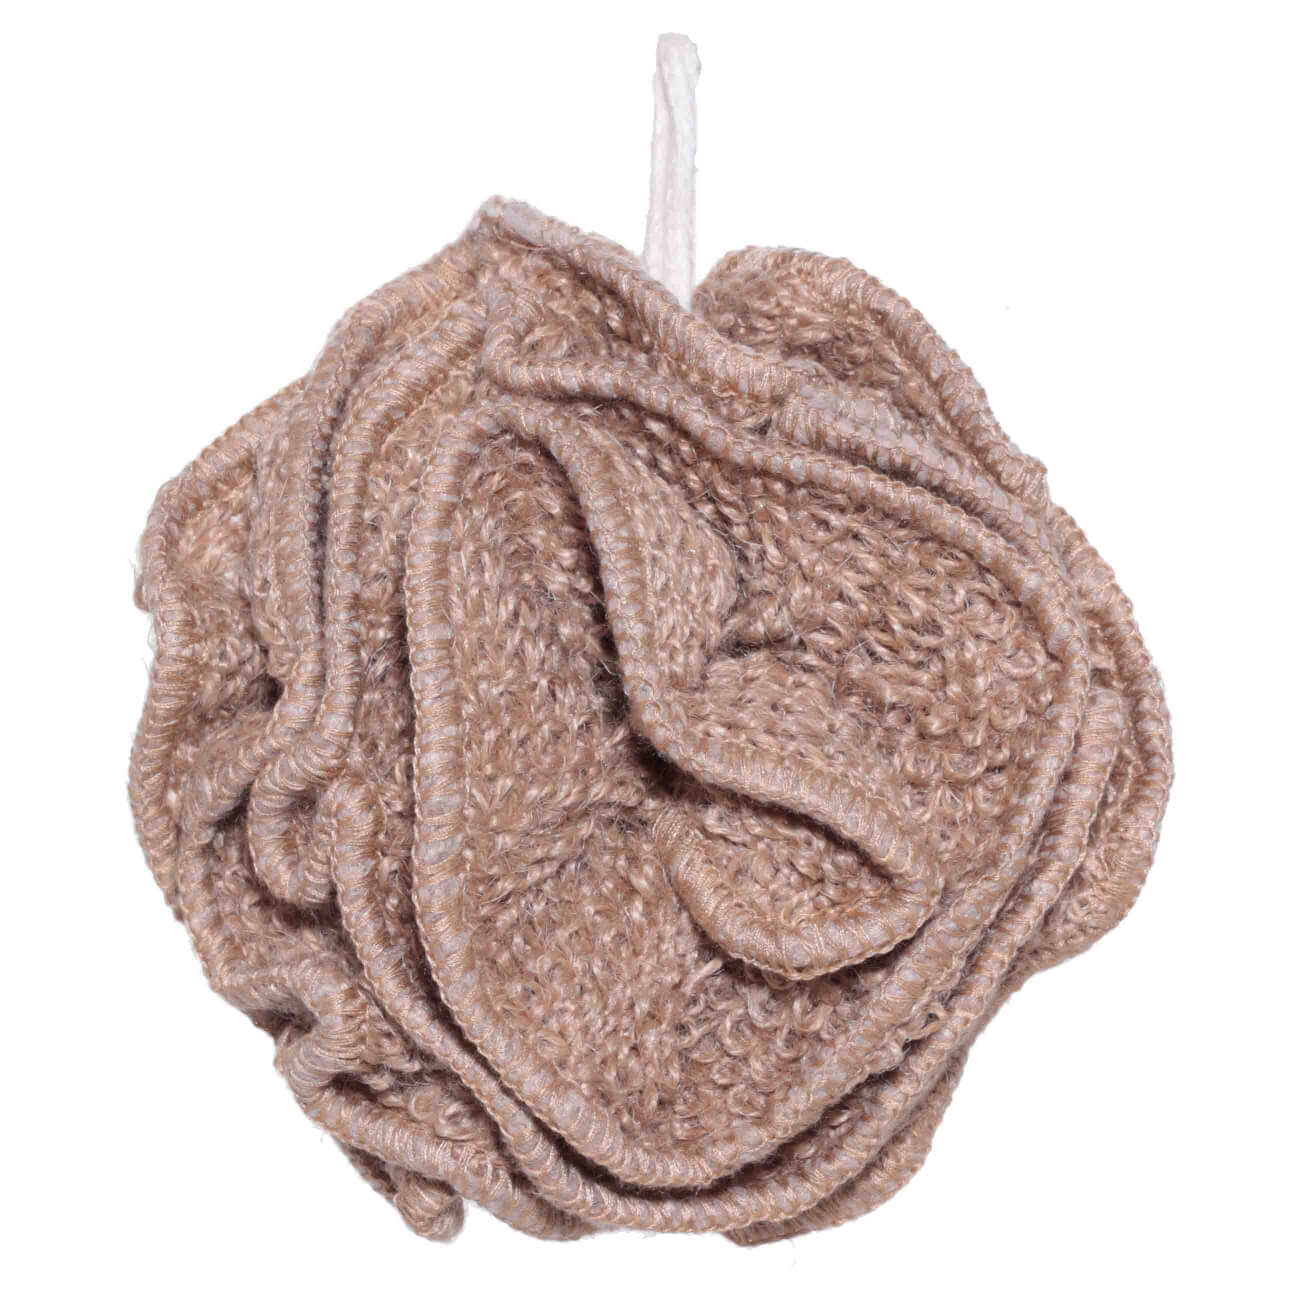 Мочалка для мытья тела, 13 см, конопляное волокно, бежевая, Бант, Eco life изображение № 1